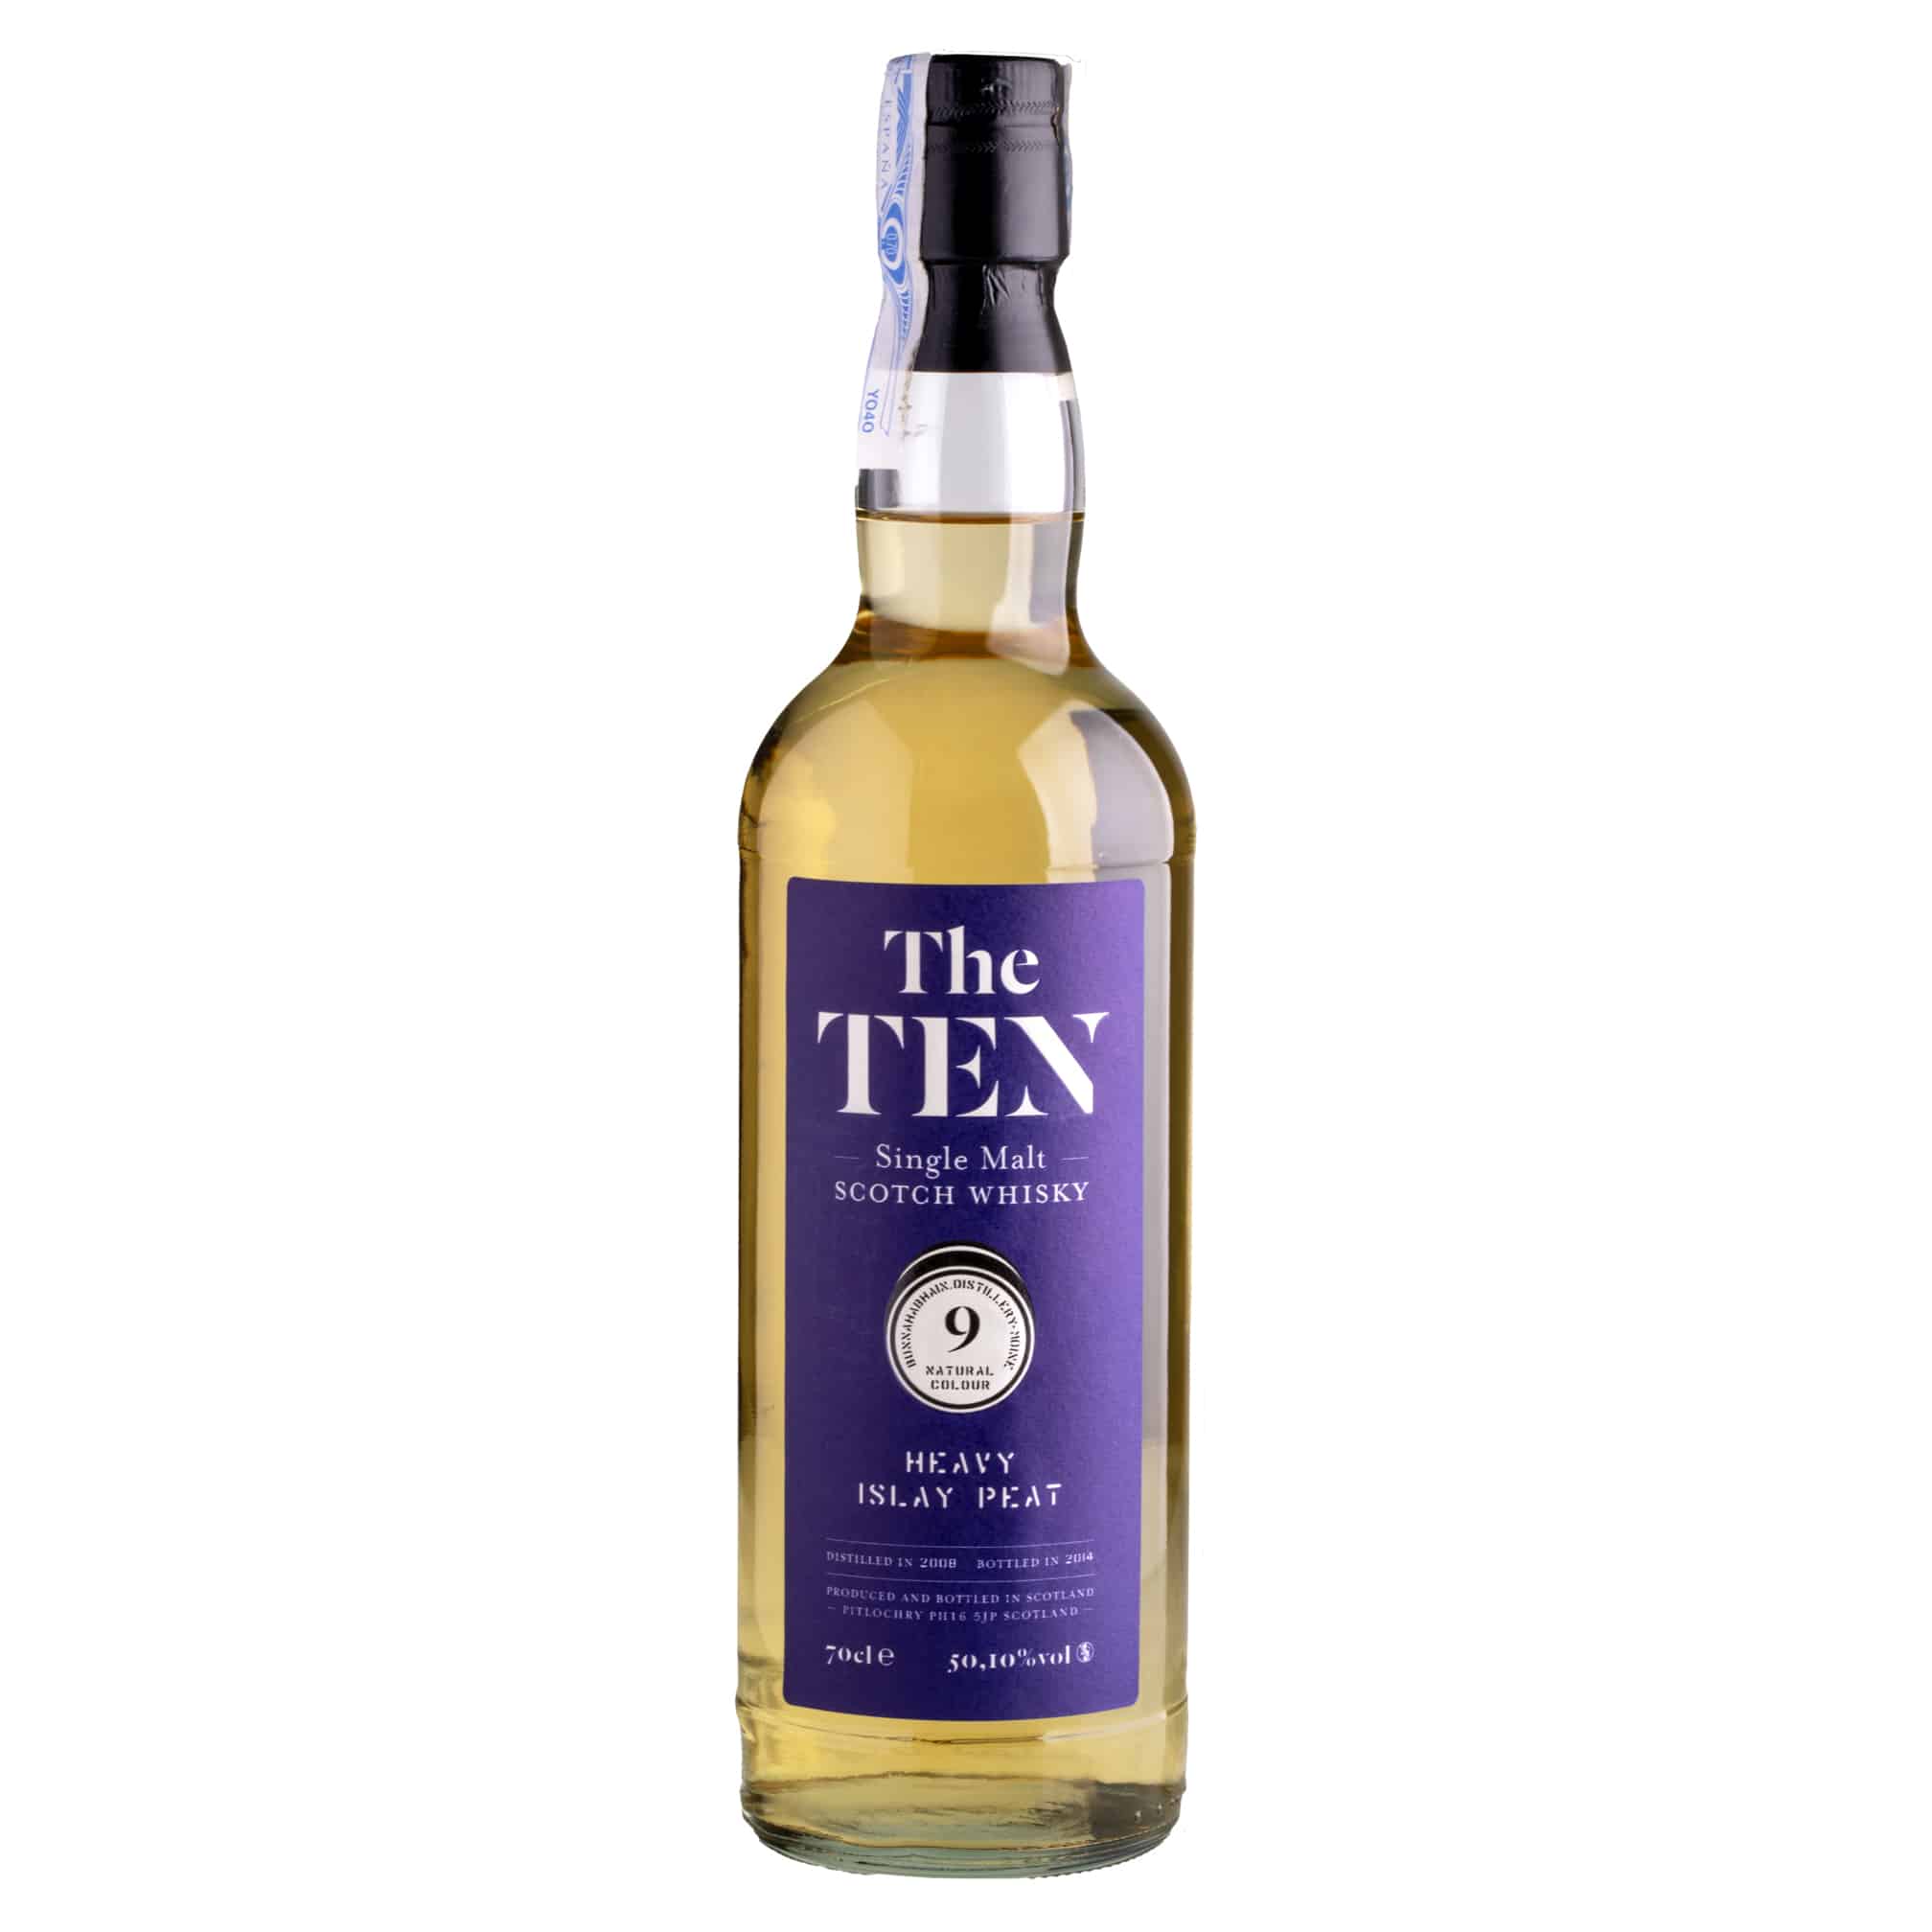 Whisky The Ten #9 Bunnahabhain 6 YO Heavy Islay Peat Single Malt 50,10%